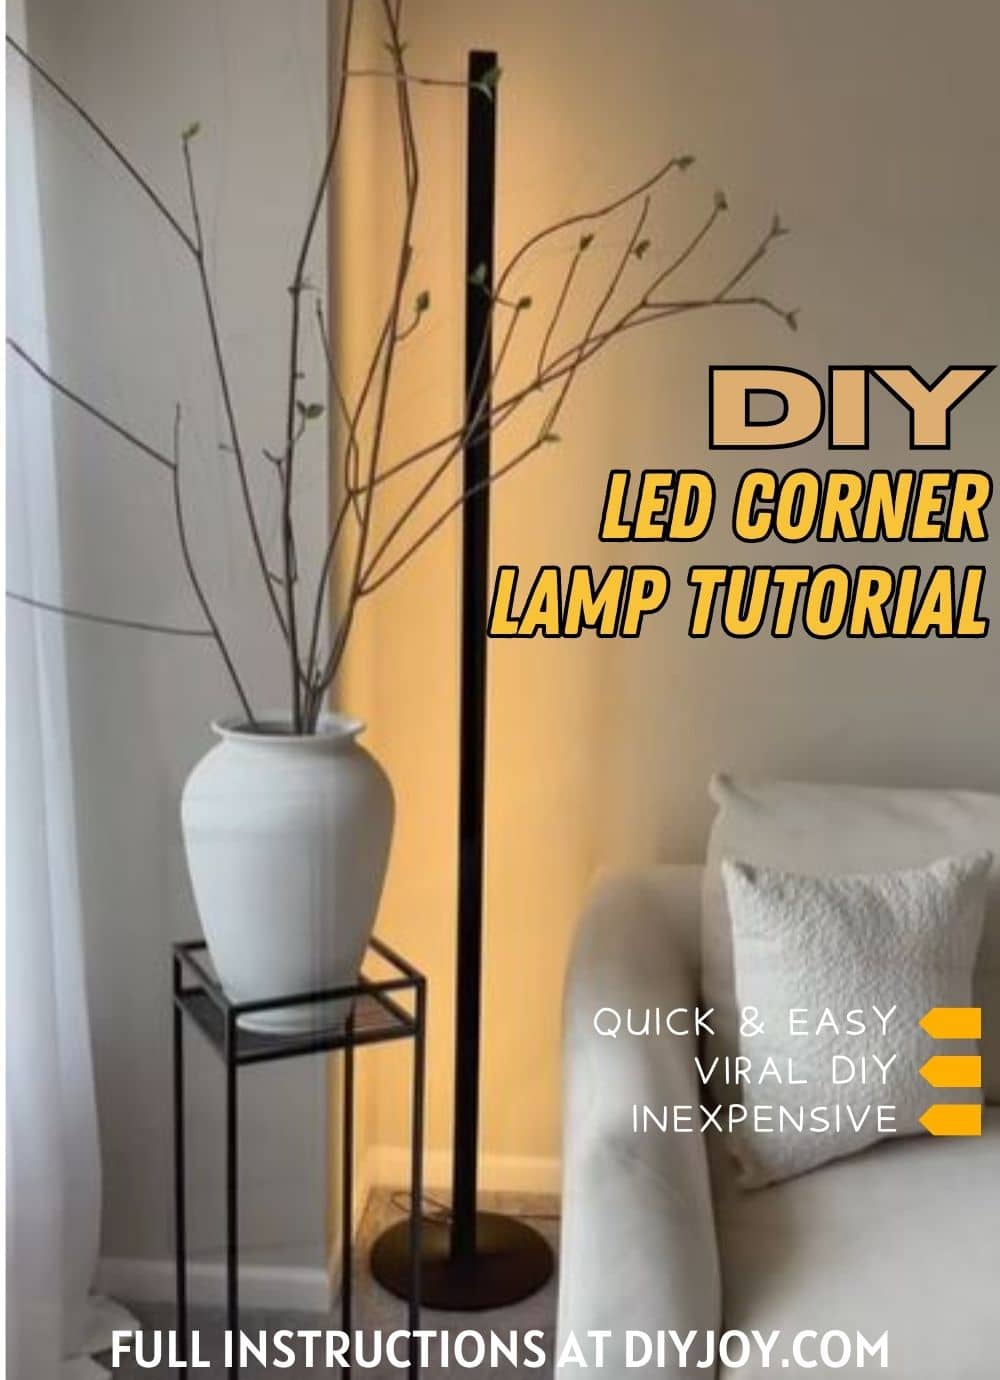 DIY LED Corner Lamp Tutorial